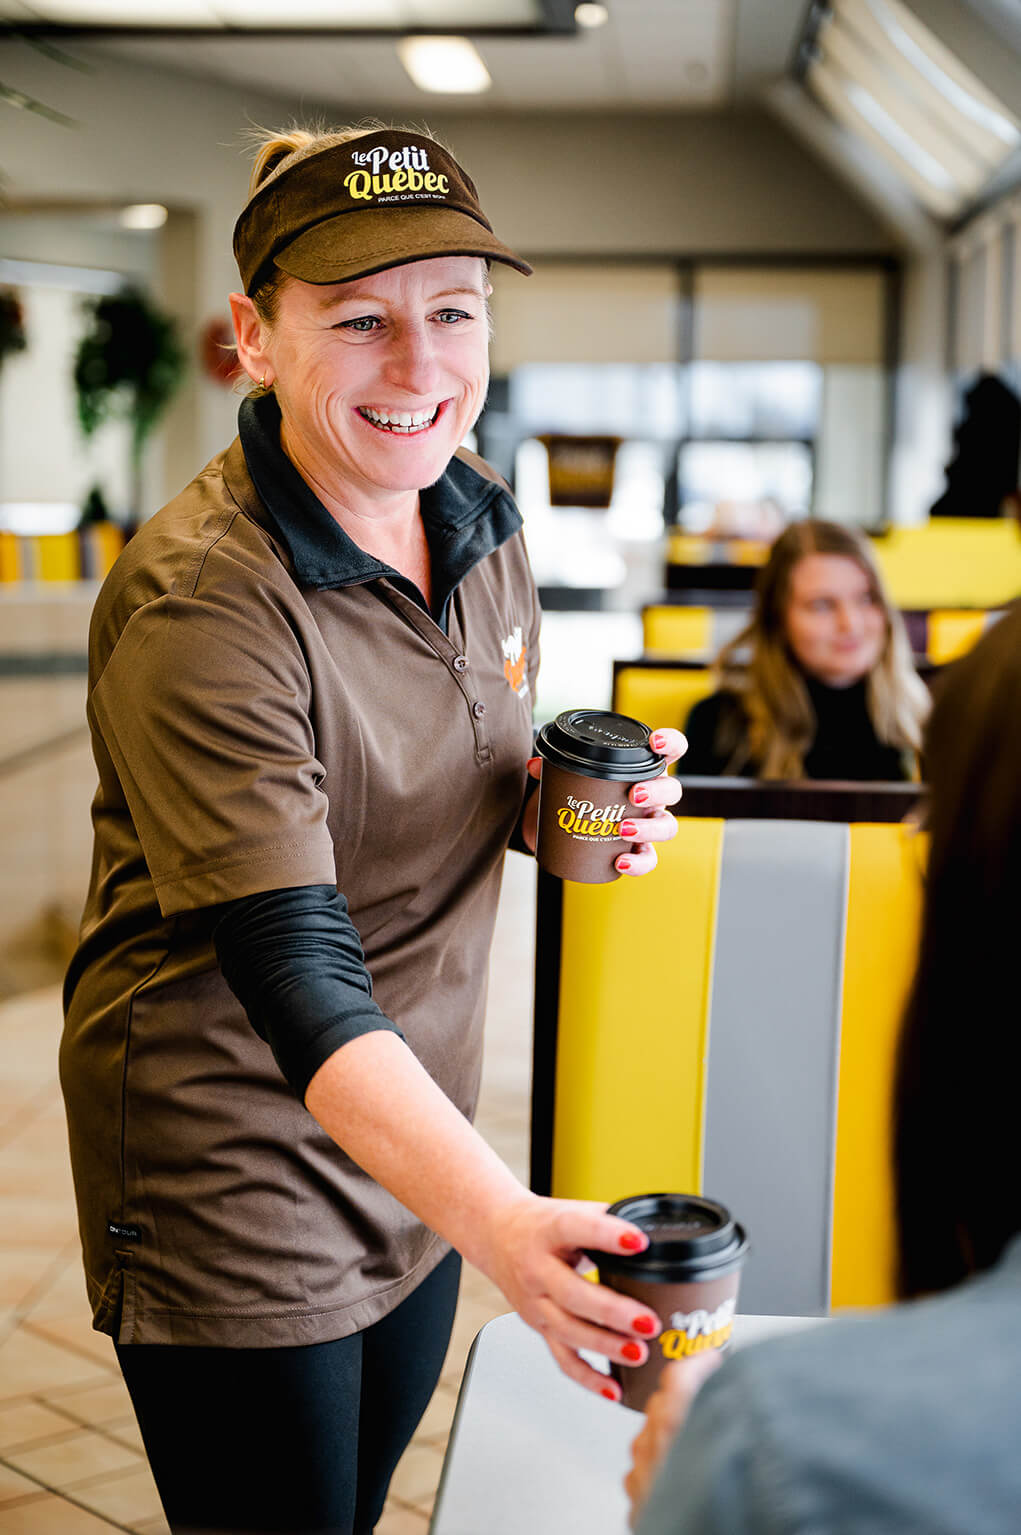 Femme qui sert le café aux clients dans un restaurant fast-food Le Petit Québec